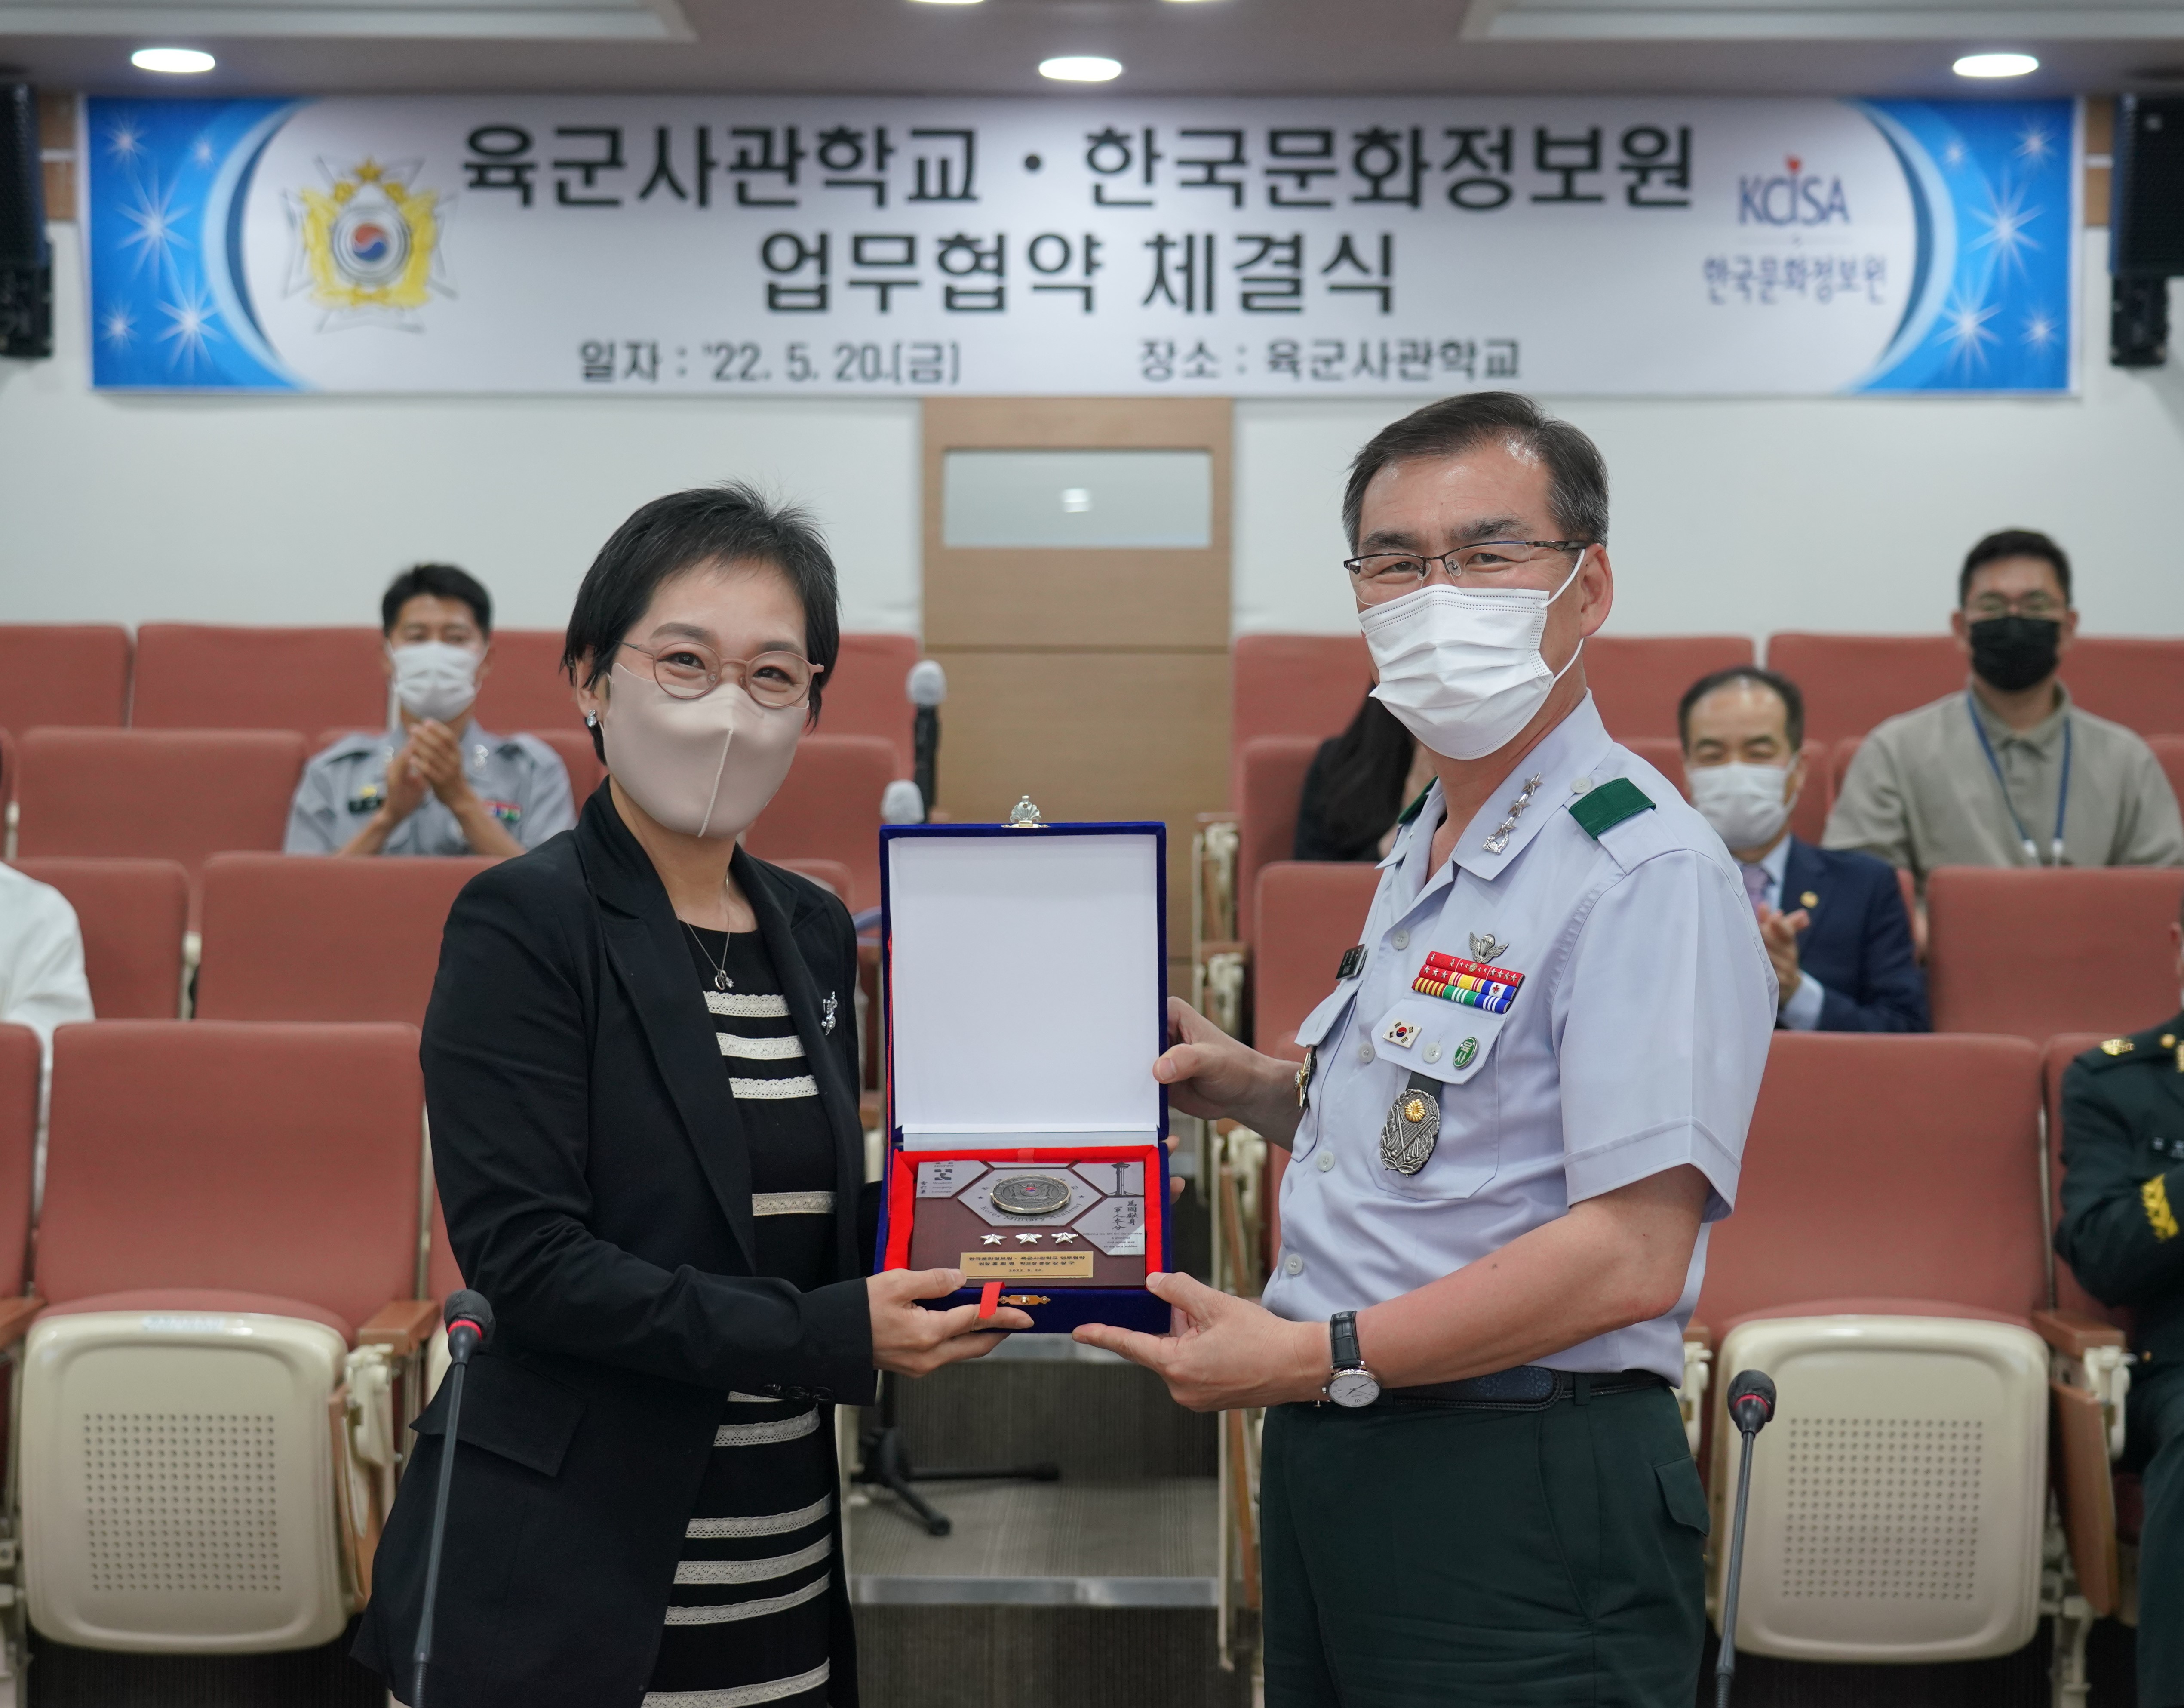 사진2 : 한국문화정보원과 육군사관학교는 공공저작물 디지털 전환 구축을 위한 업무협약을 체결했다.